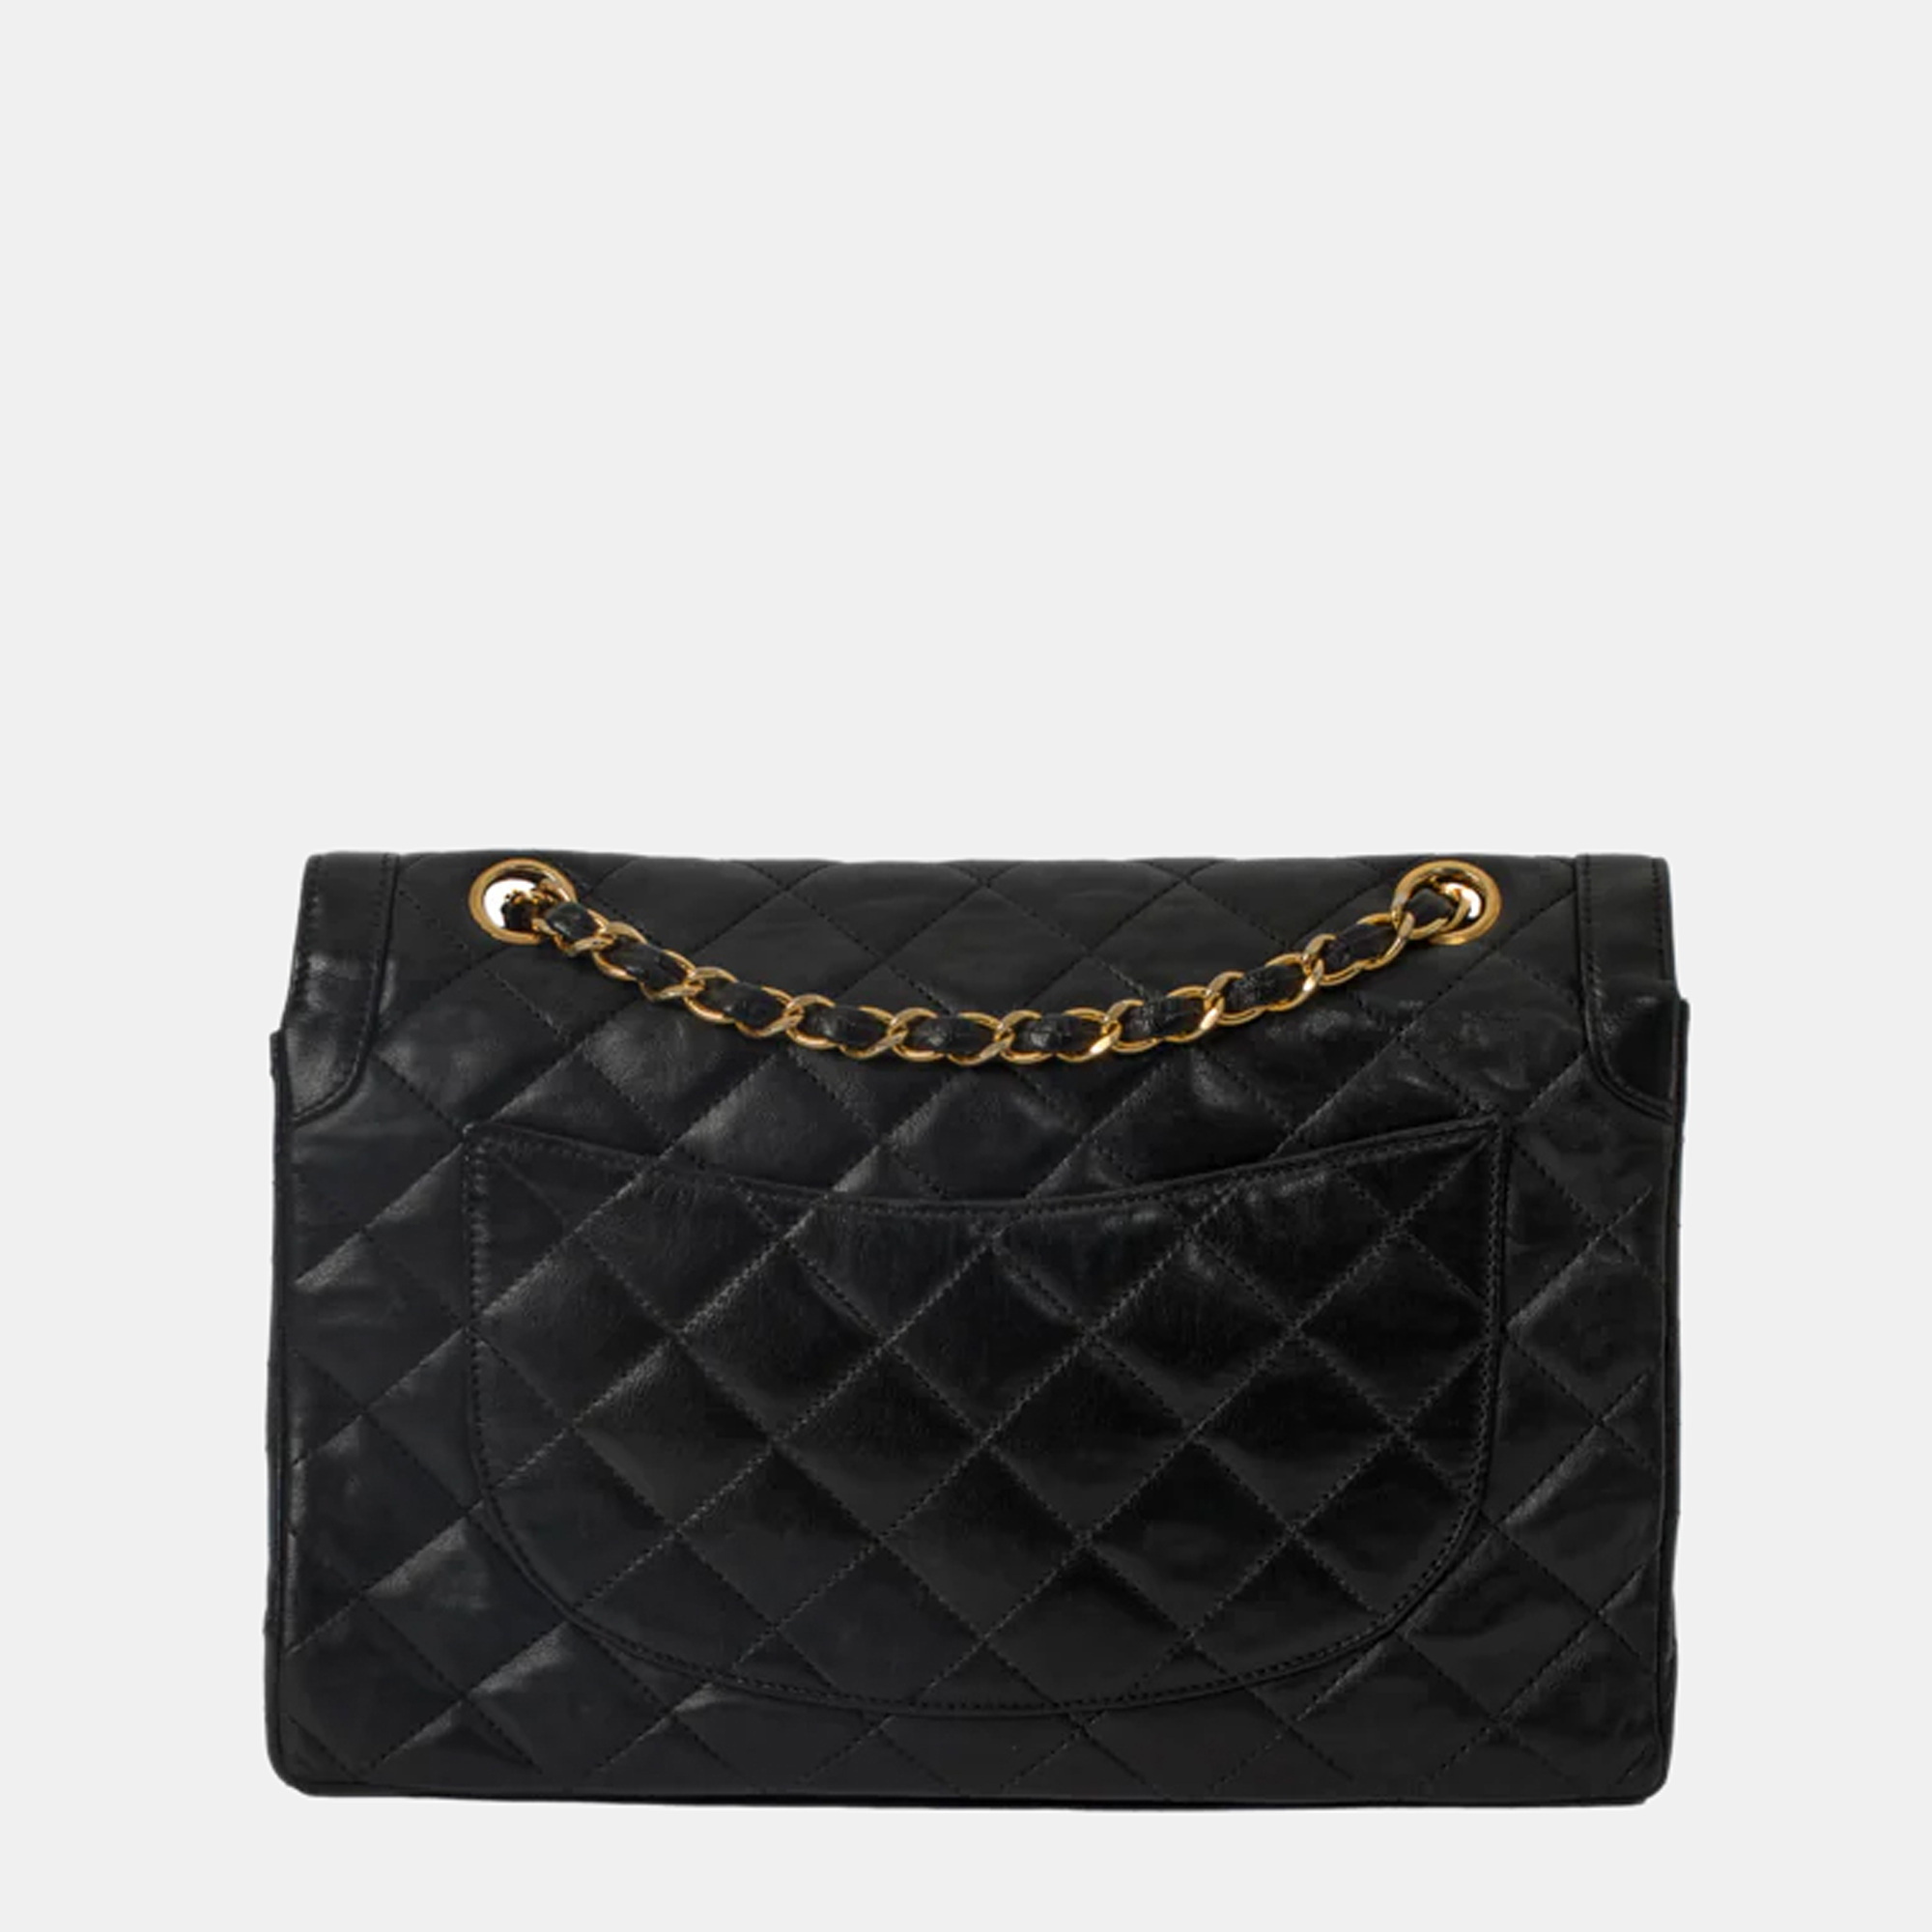 Chanel Black Leather Vintage Diana Flap Bag